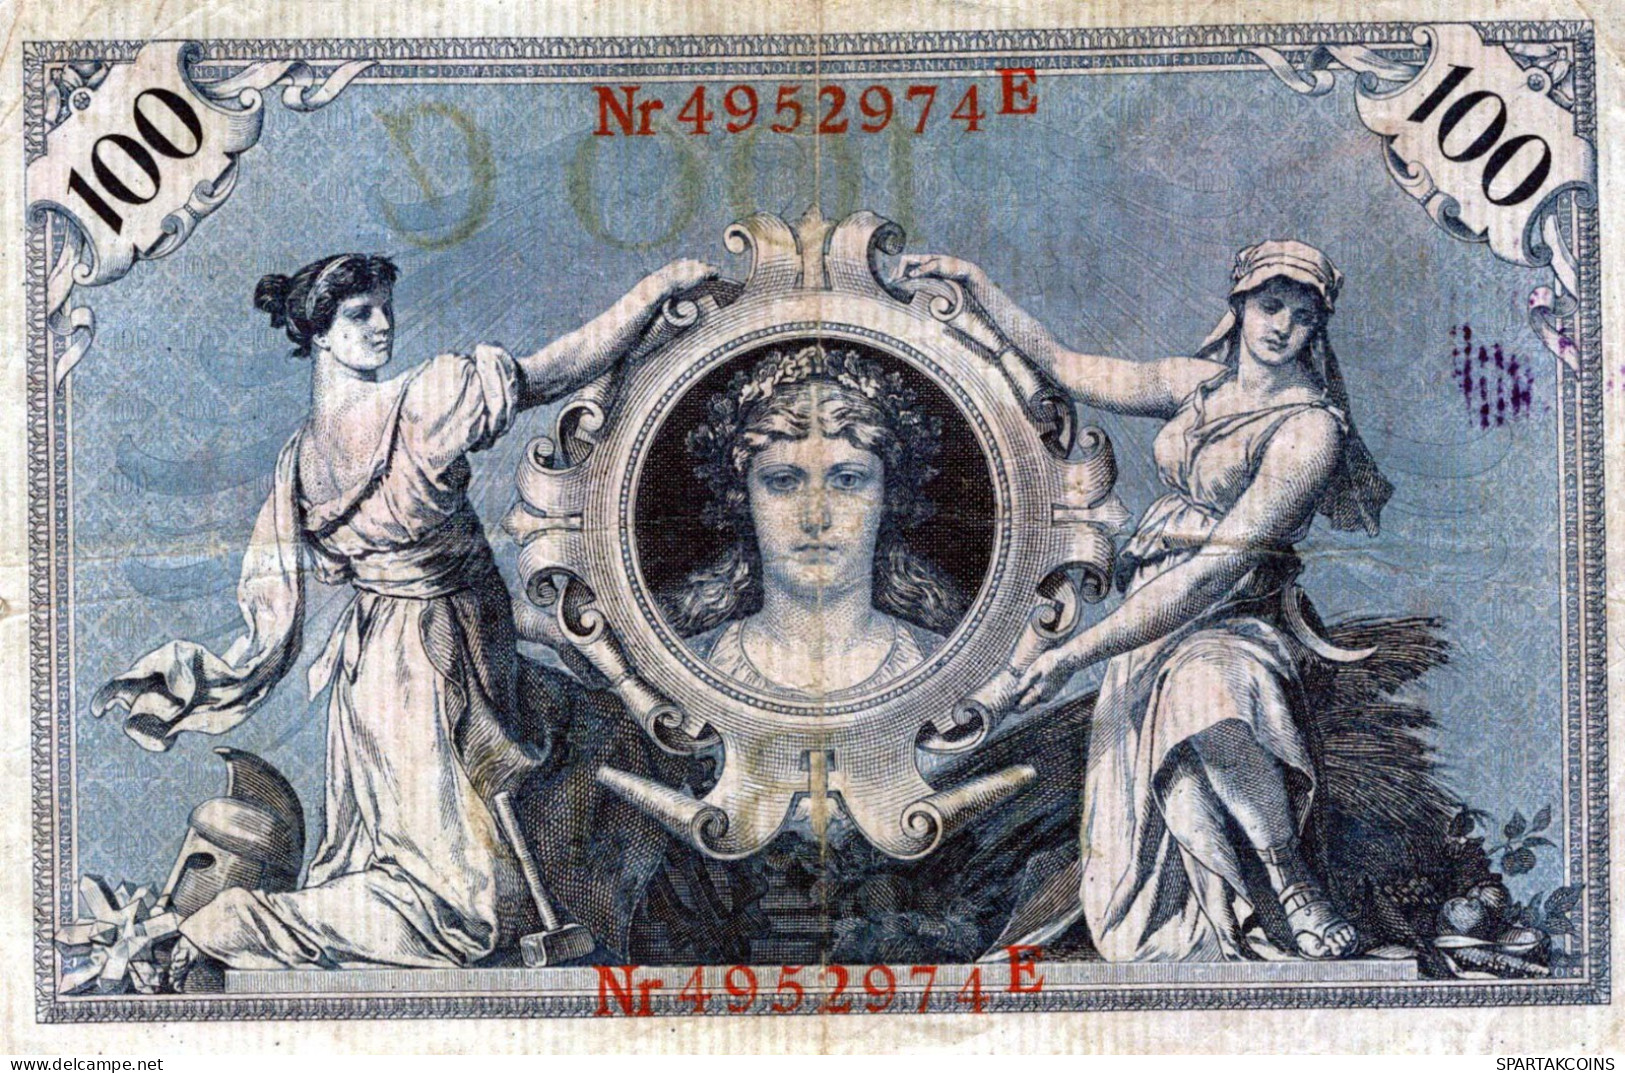 100 MARK 1908 DEUTSCHLAND Papiergeld Banknote #PL243 - [11] Lokale Uitgaven